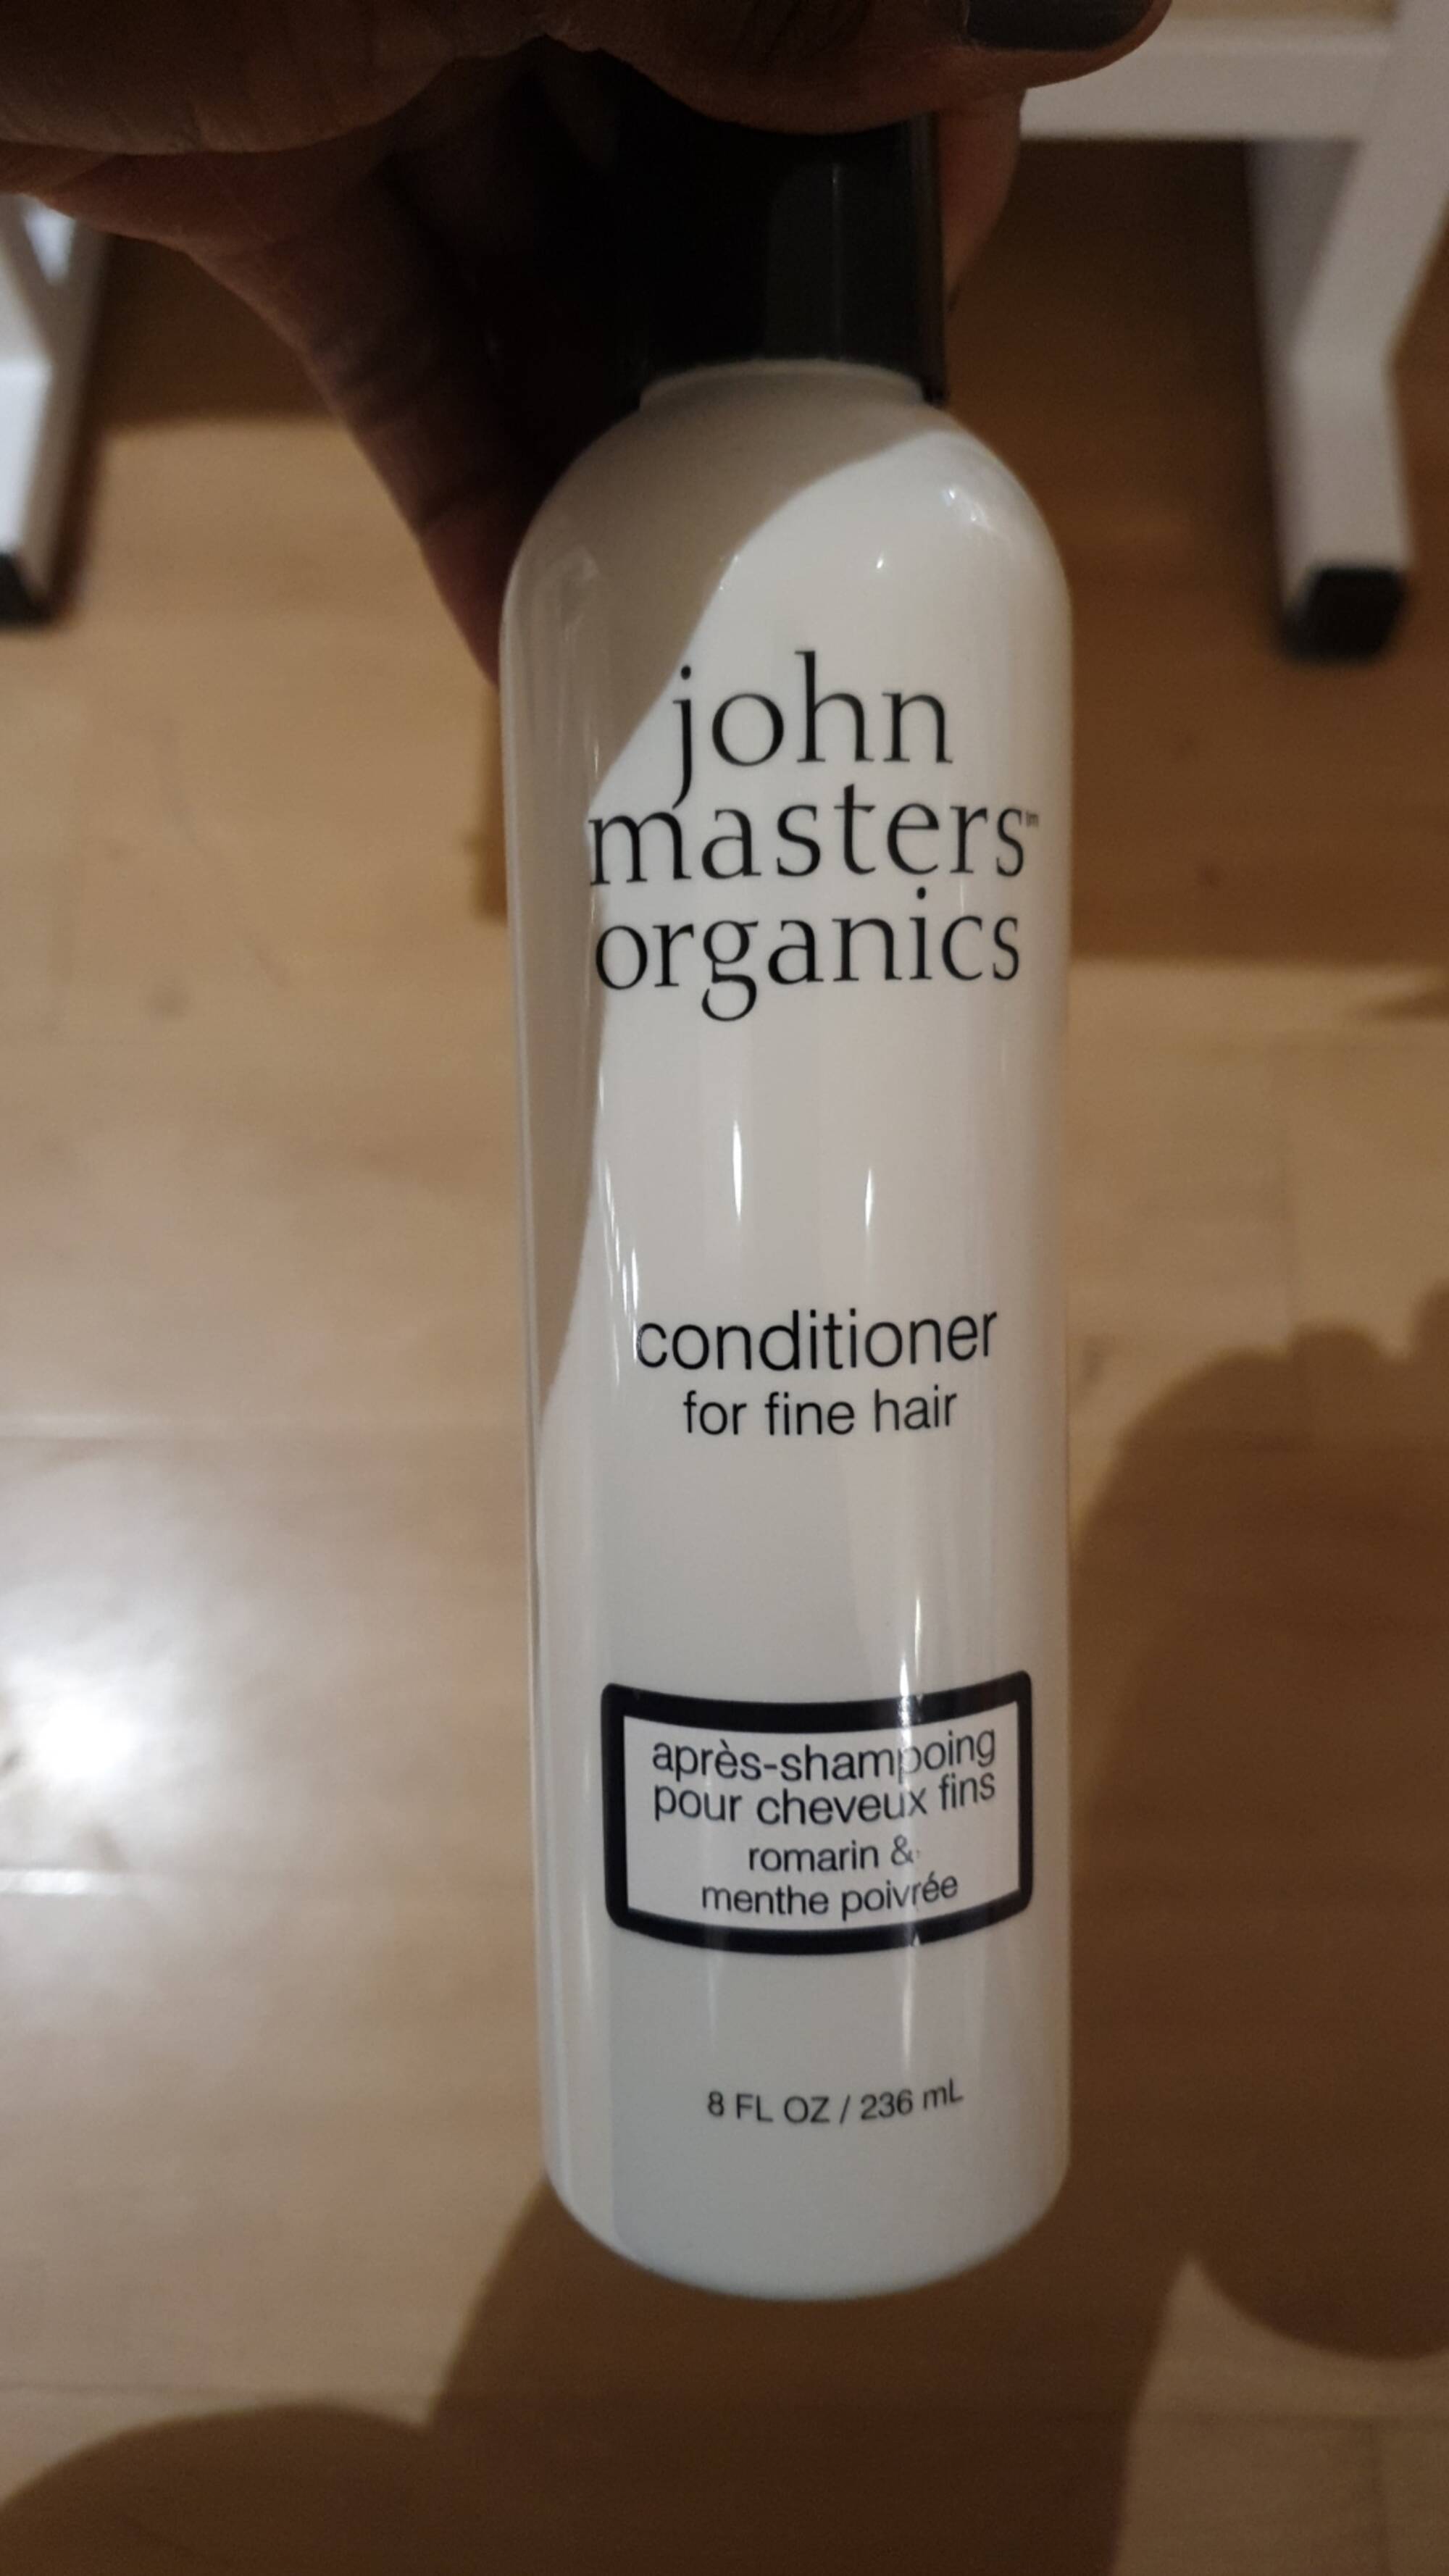 JOHN MASTERS ORGANICS - Après-shampoing pour cheveux fins romarin & menthe poivrée